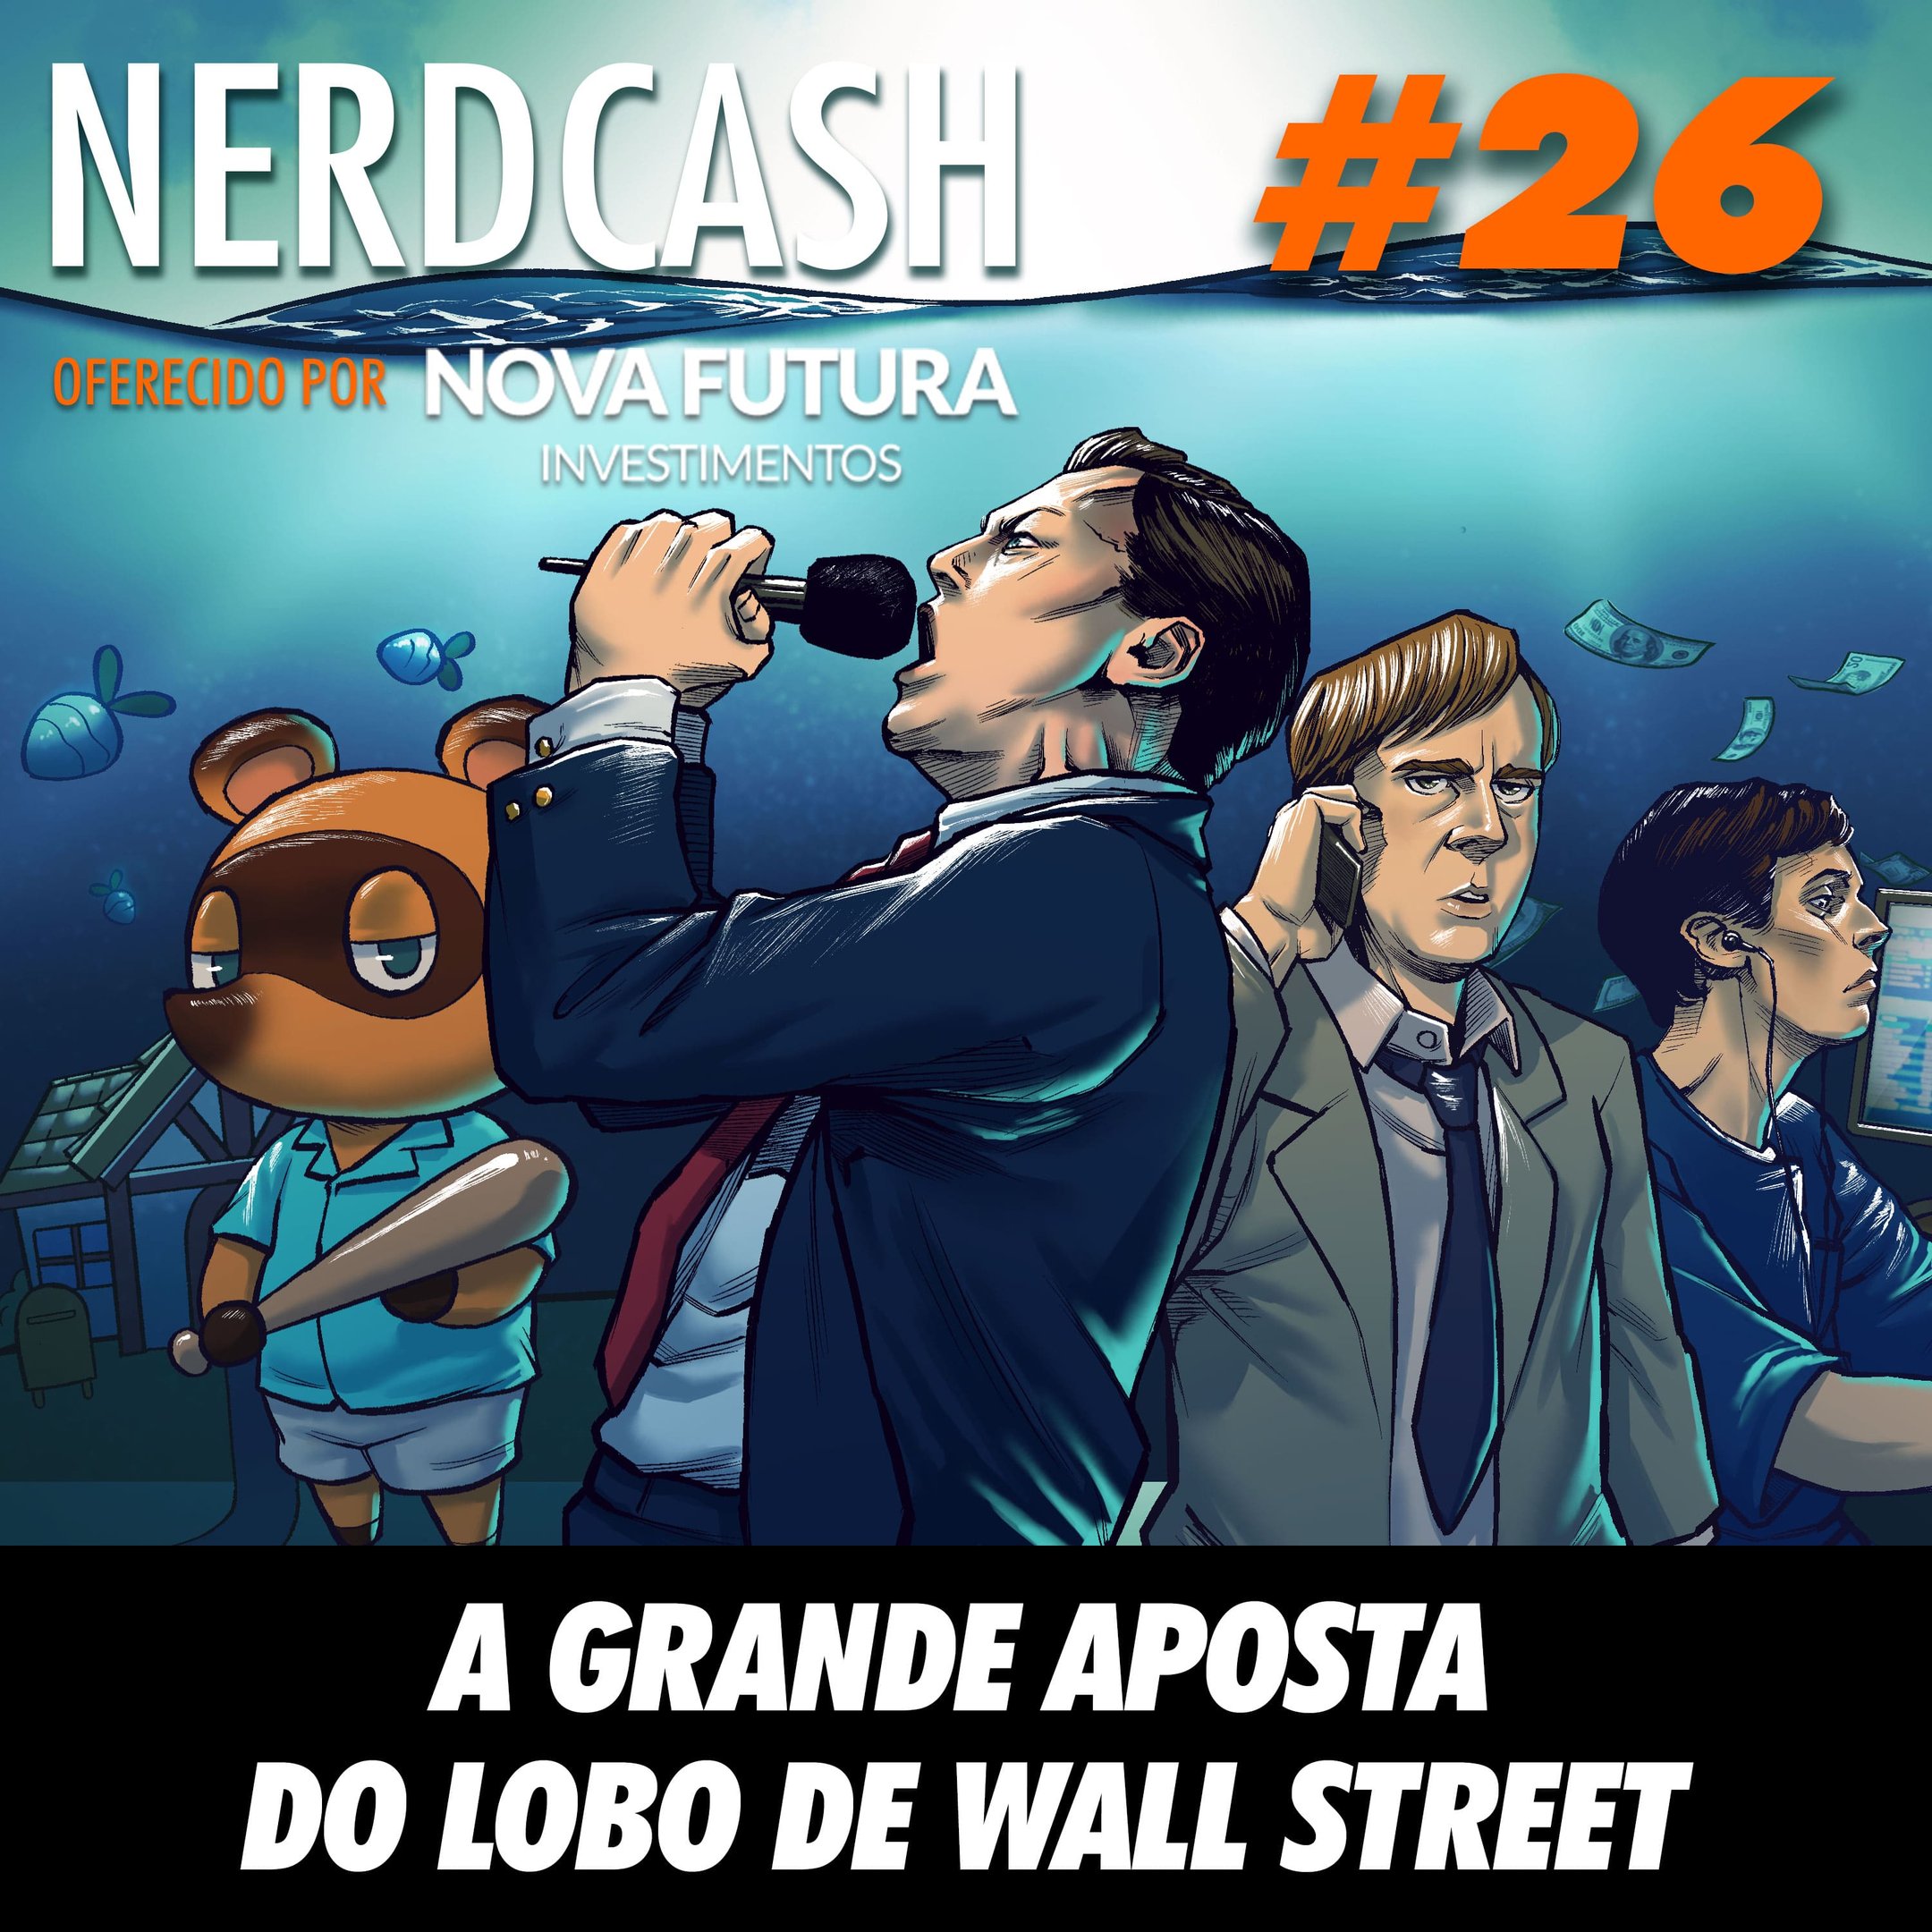 NerdCash 26 - A grande aposta do lobo de Wall Street